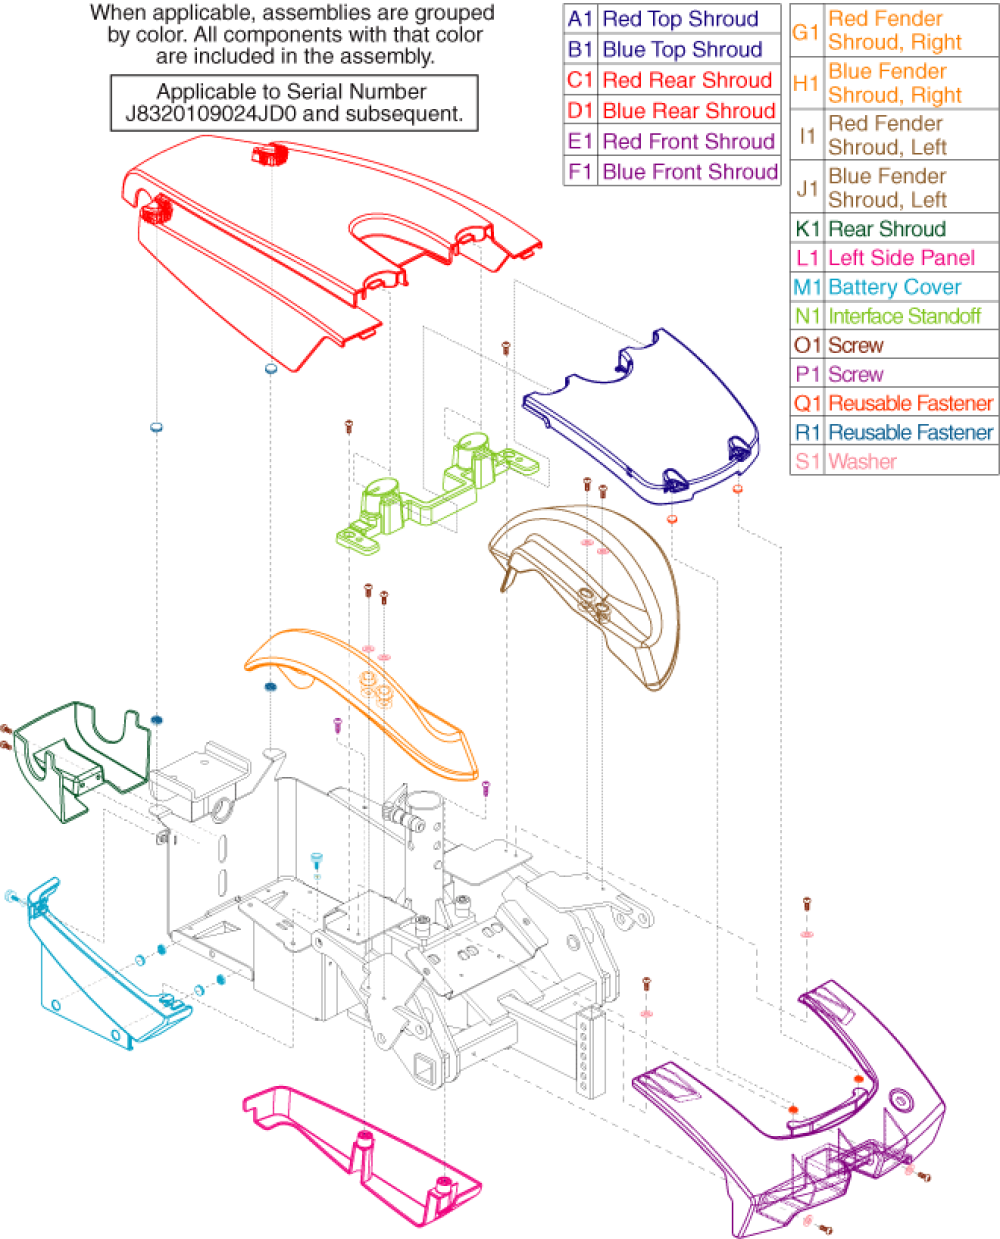 Shroud Assembly Gen. 2 parts diagram